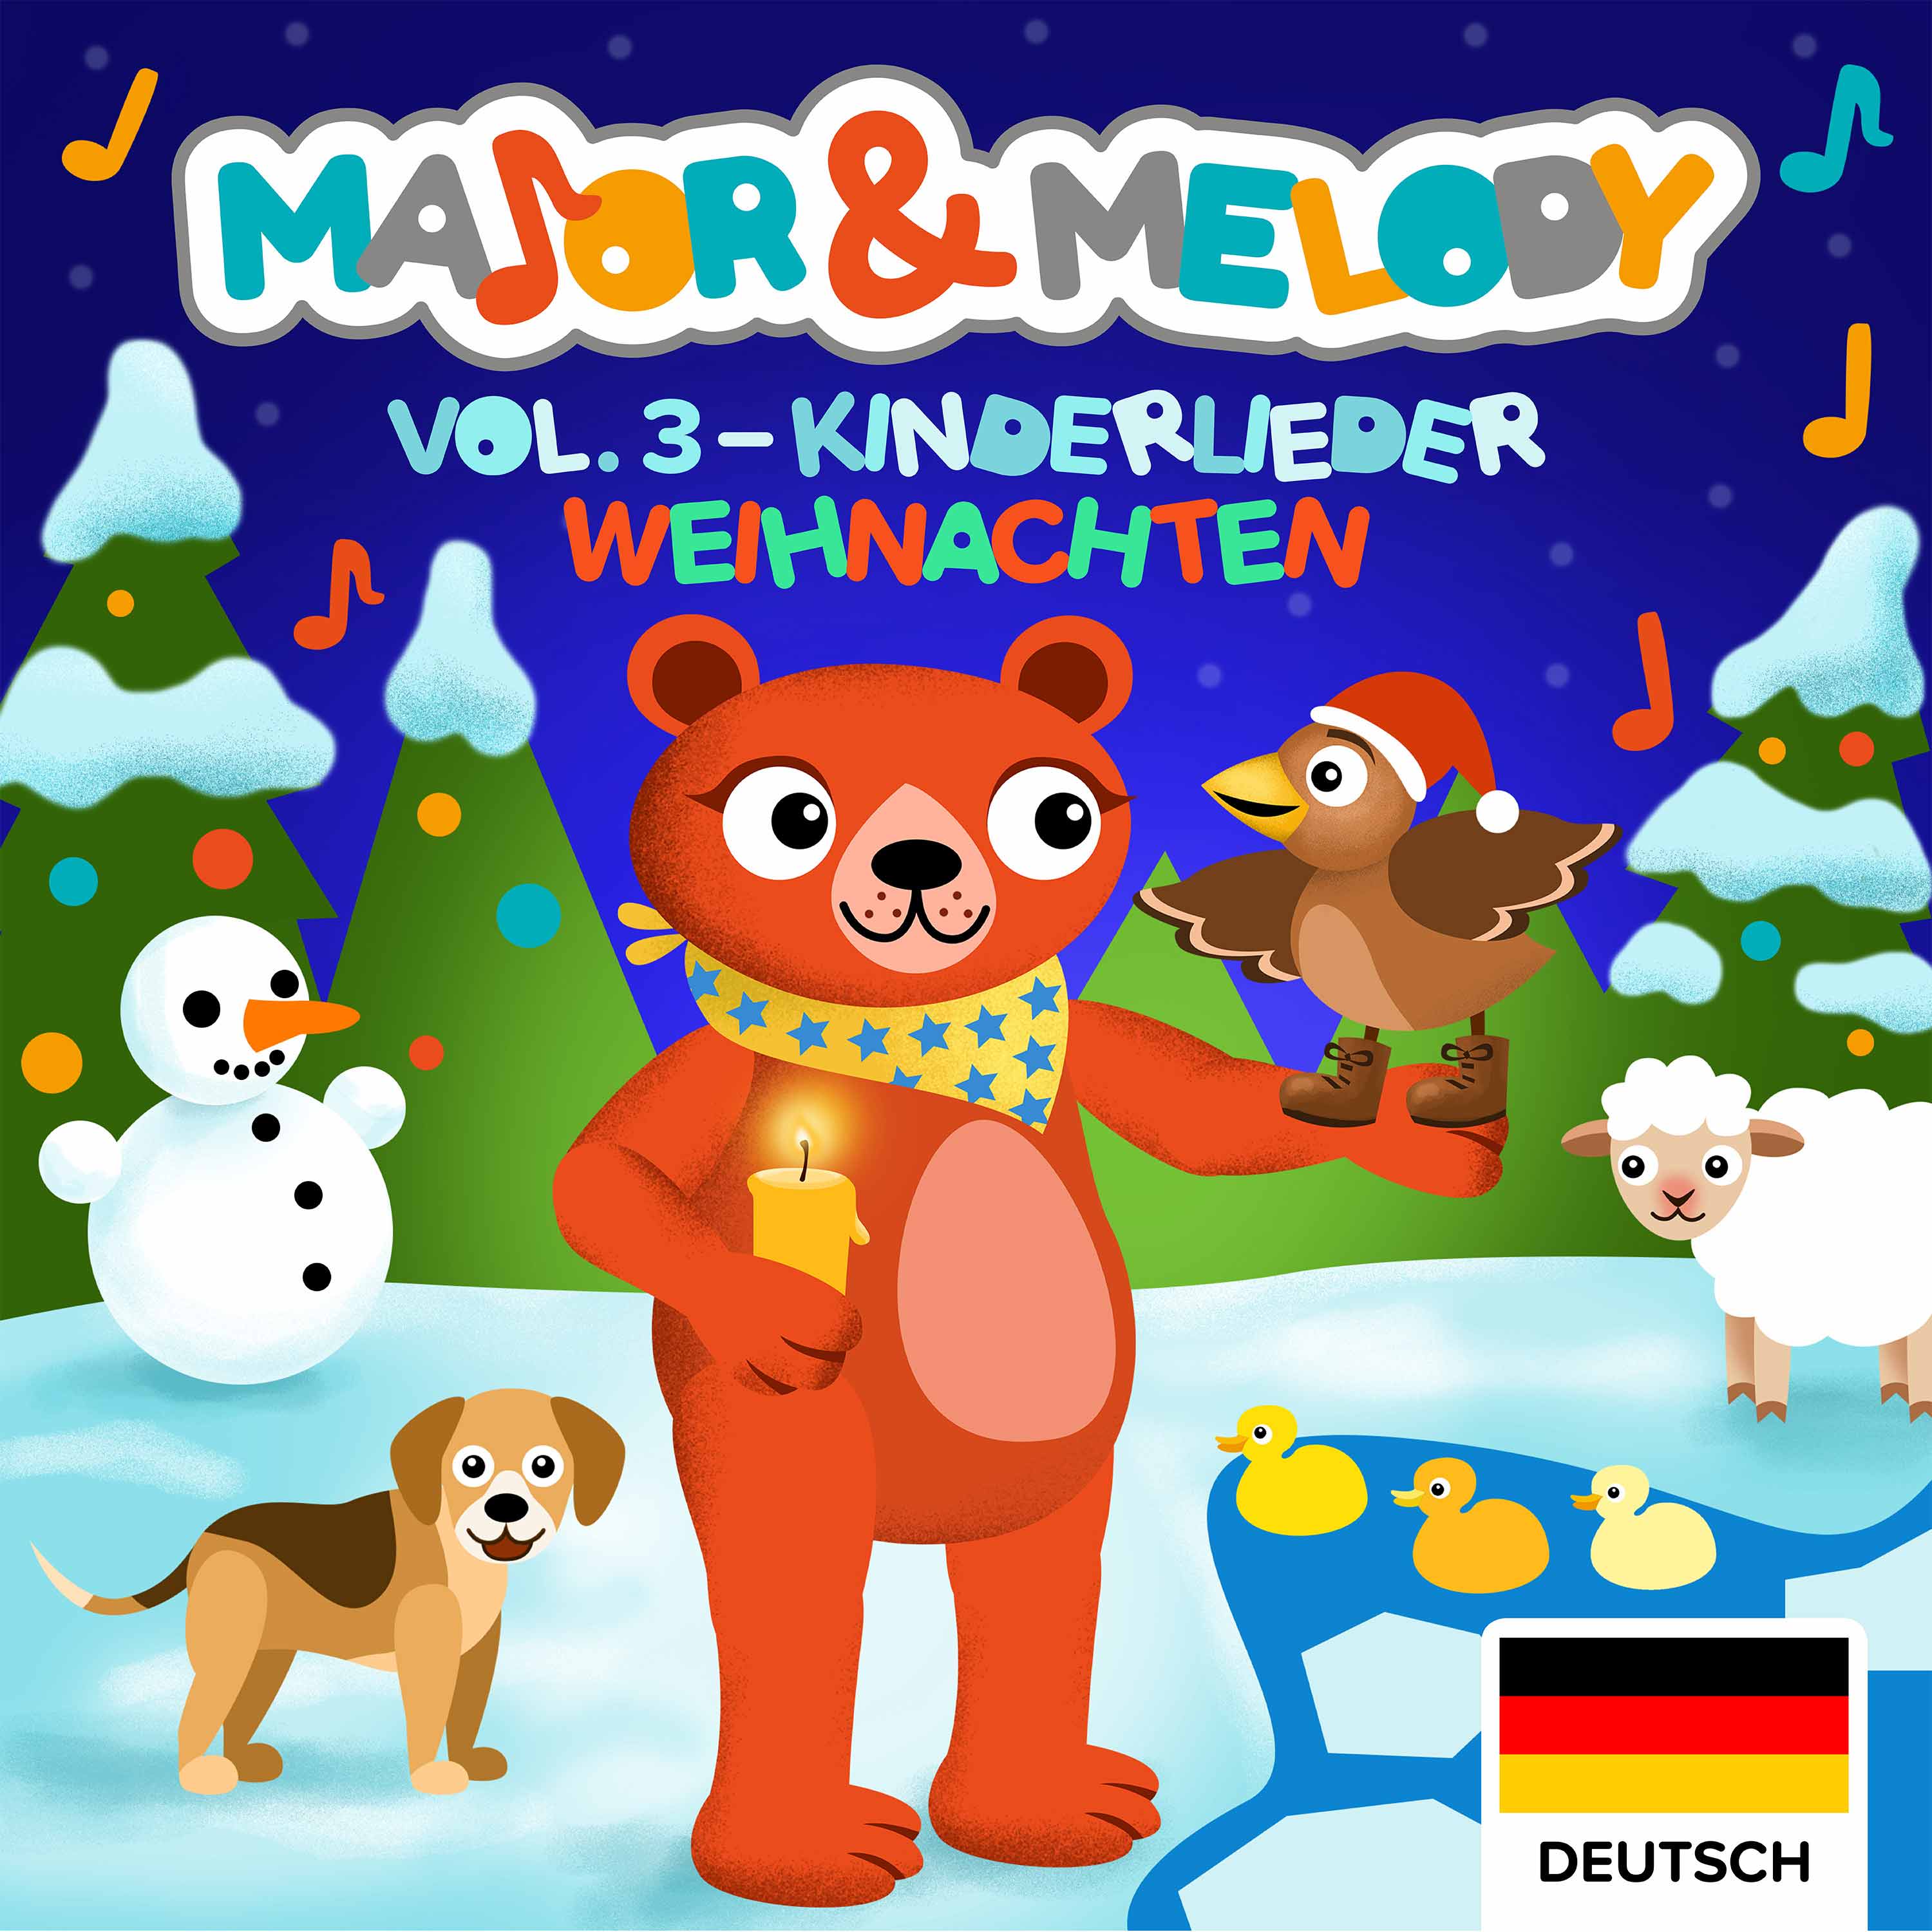 Major & Melody: Kinderlieder - Vol.3 (Weihnachten)